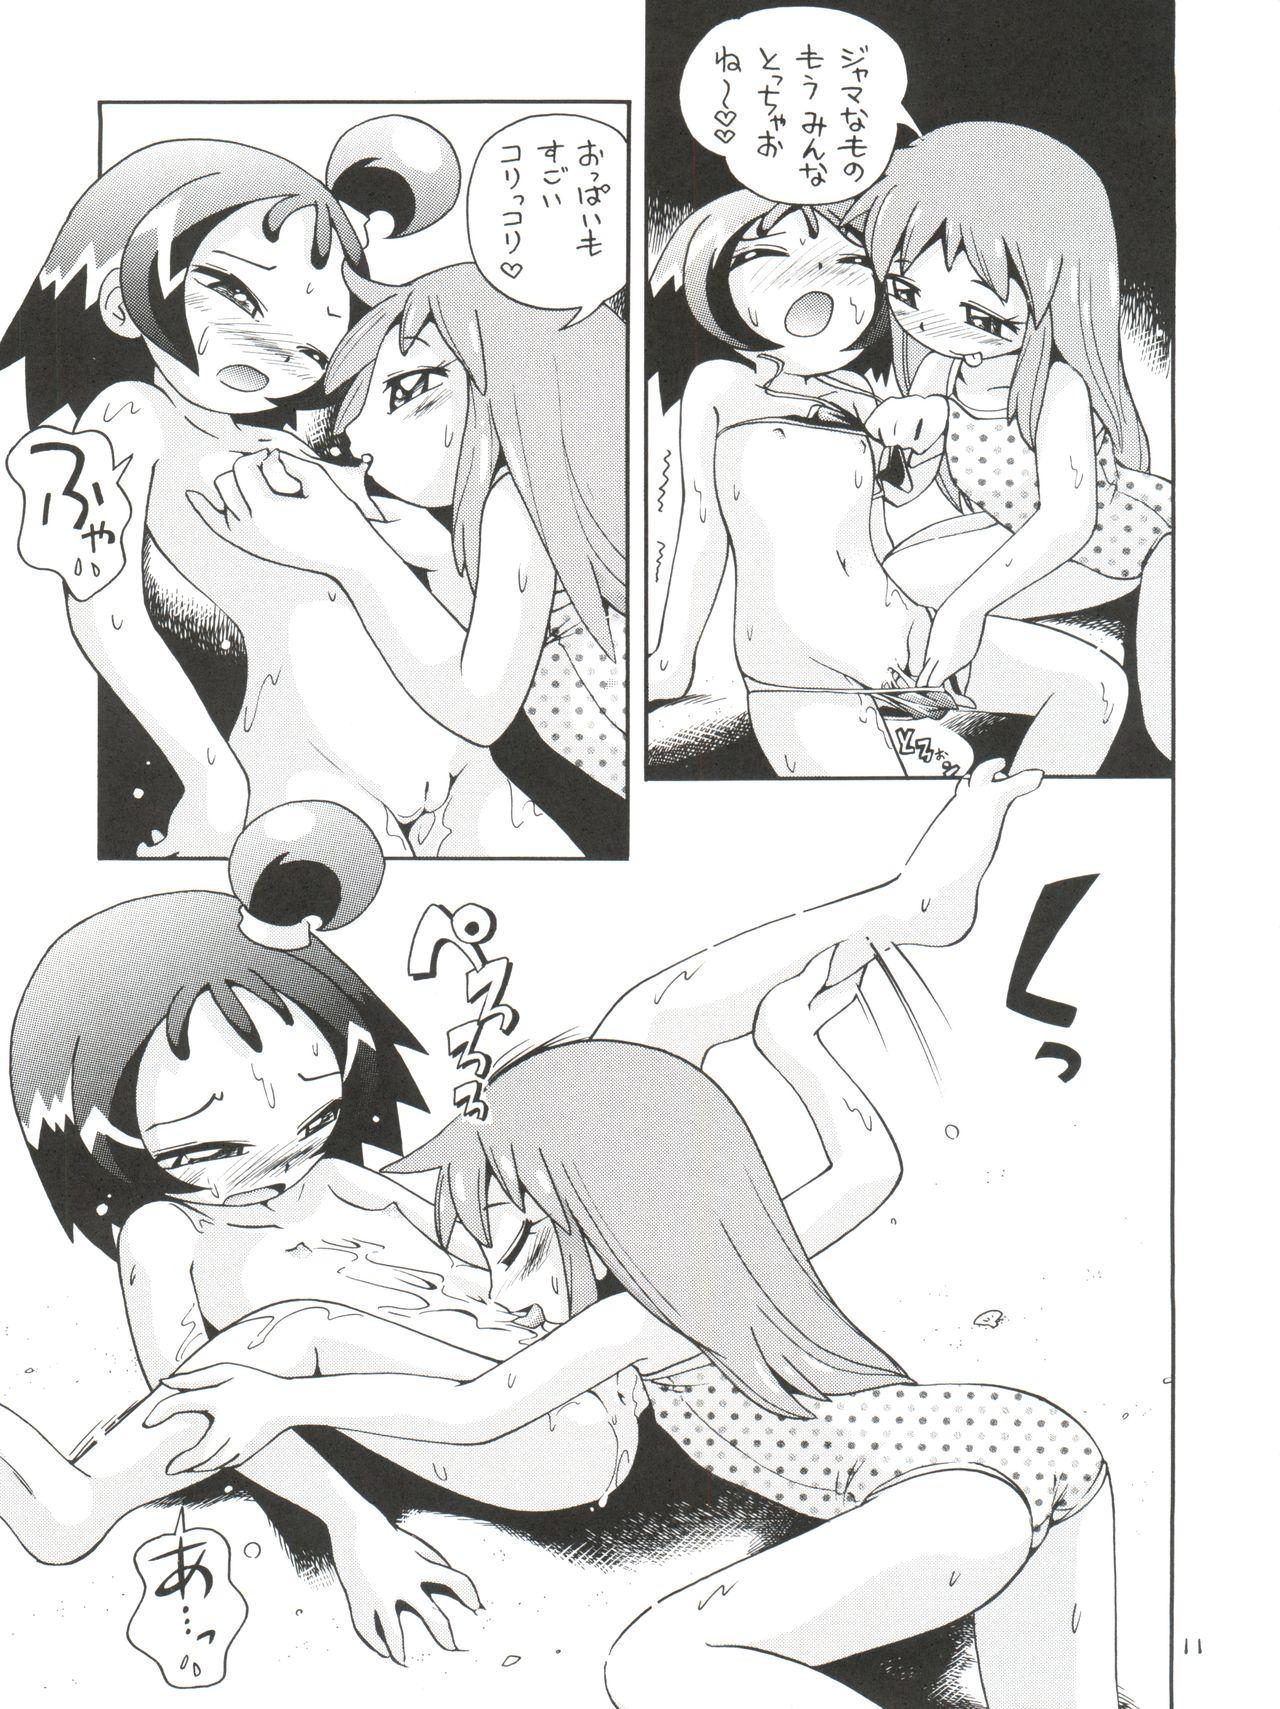 Fodendo Puchi Pure - Cardcaptor sakura Ojamajo doremi Azumanga daioh Fushigiboshi no futagohime Nyanda kamen Gay Black - Page 11